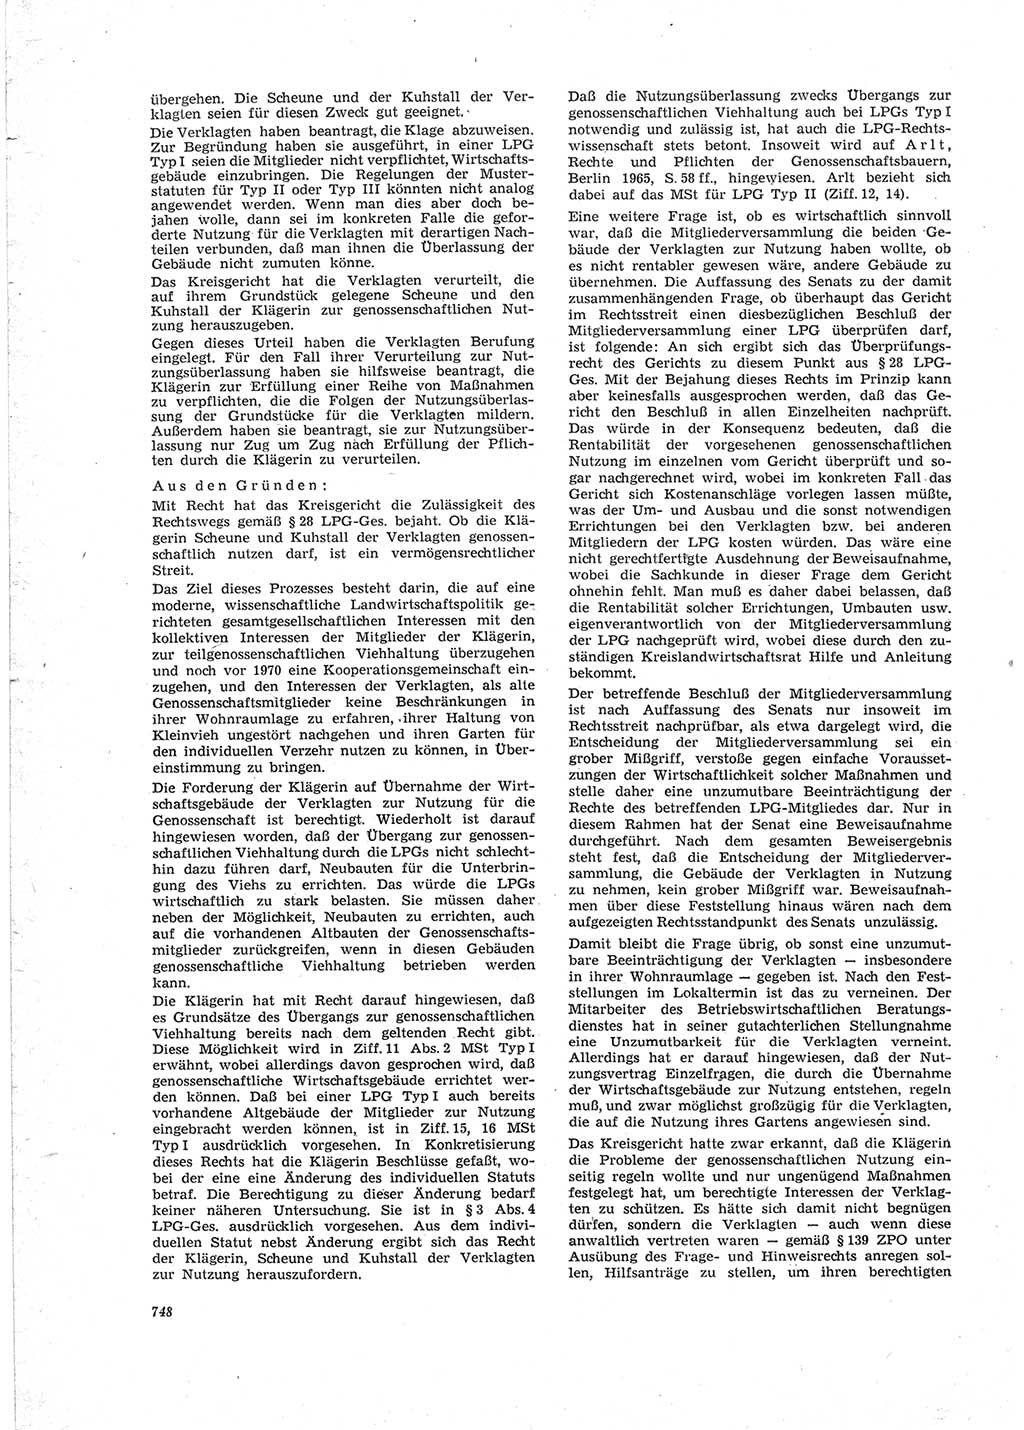 Neue Justiz (NJ), Zeitschrift für Recht und Rechtswissenschaft [Deutsche Demokratische Republik (DDR)], 23. Jahrgang 1969, Seite 748 (NJ DDR 1969, S. 748)